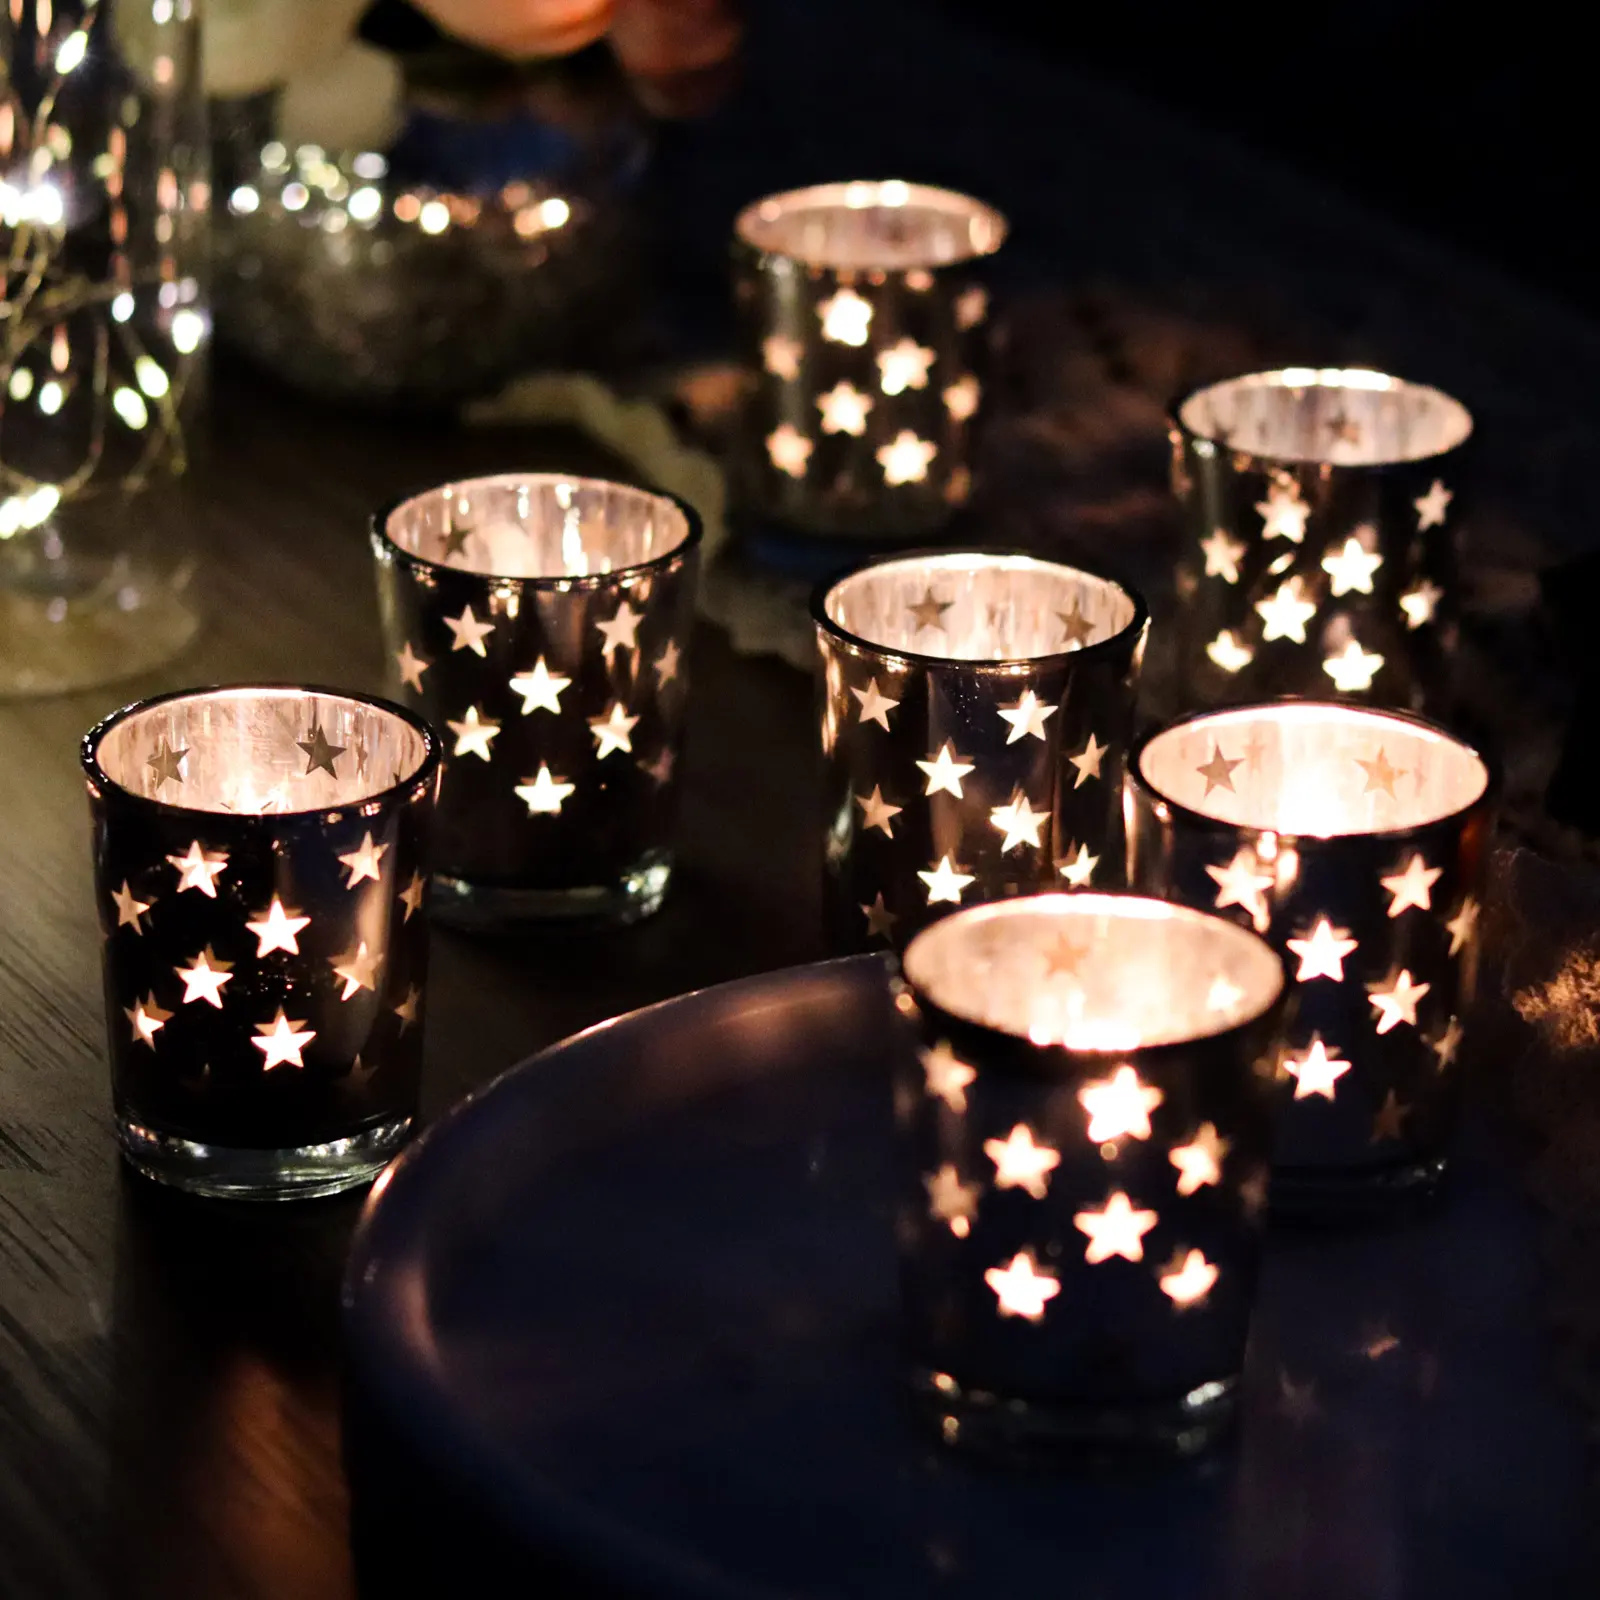 طقم بالجملة من 12 نجمة فضية زجاج الطاولة عصرية حاملة عصا شمع لحفلات الزفاف وديكورات شهر رمضان